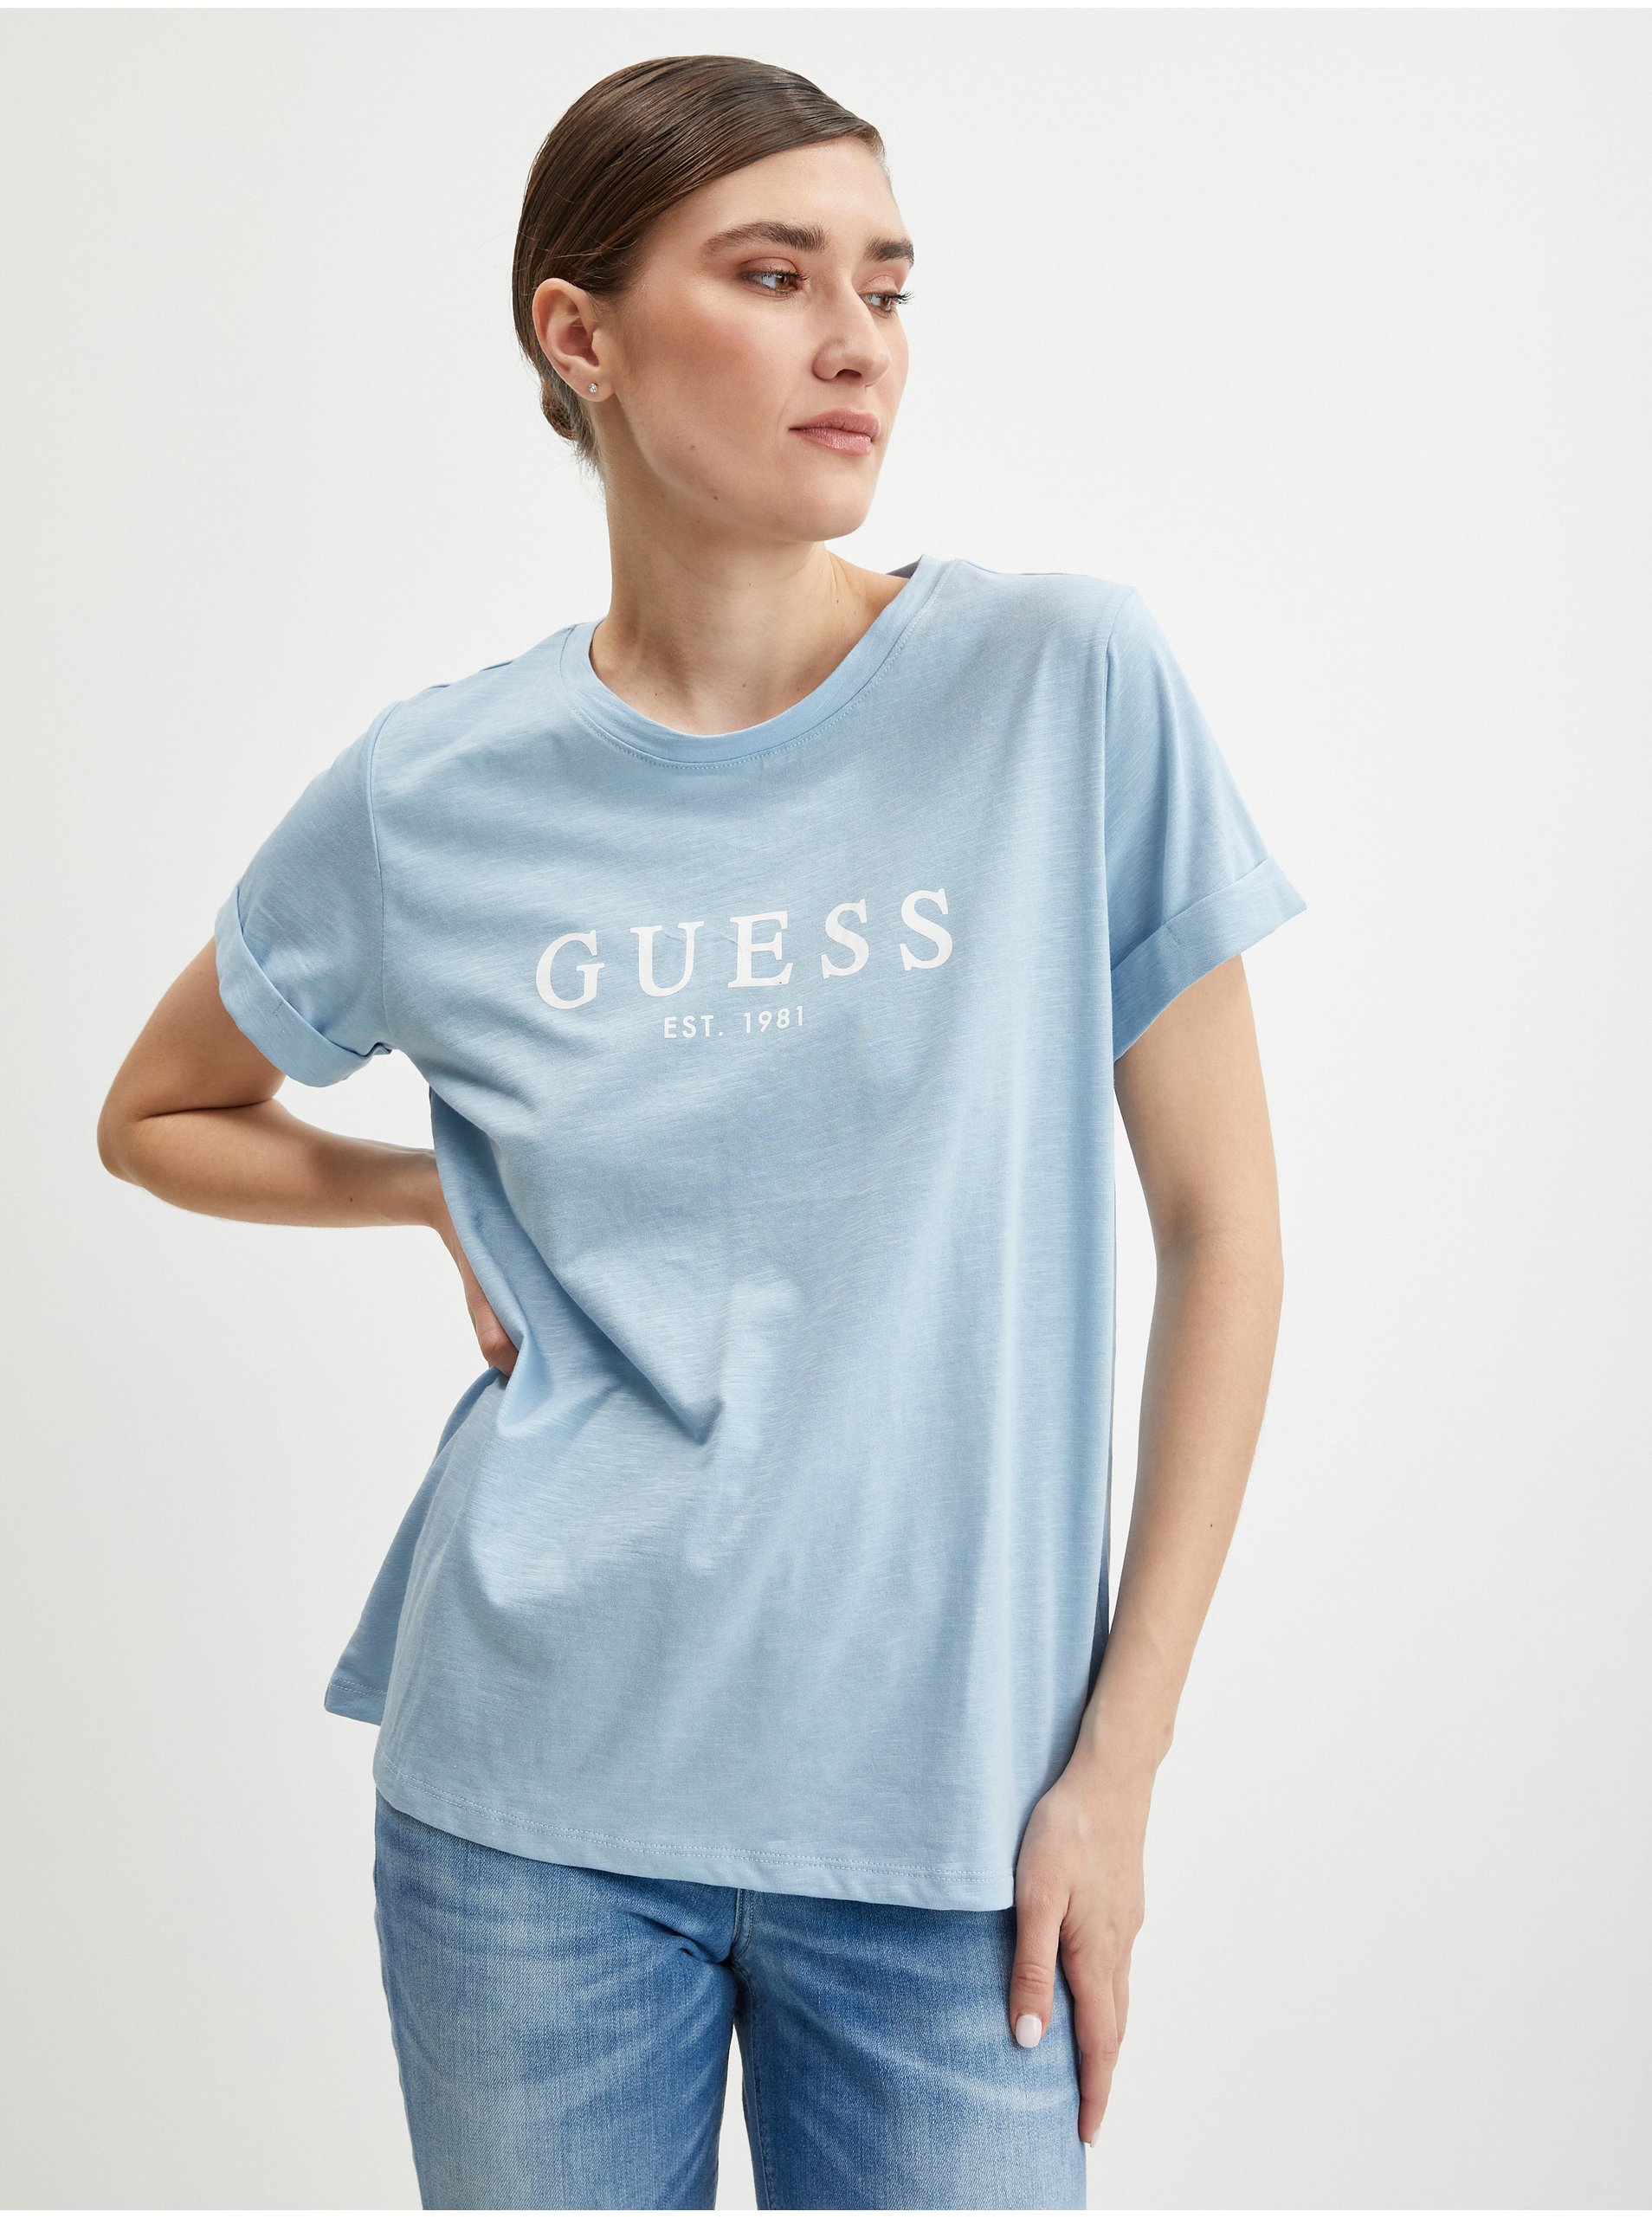 E-shop Světle modré dámské tričko Guess 1981